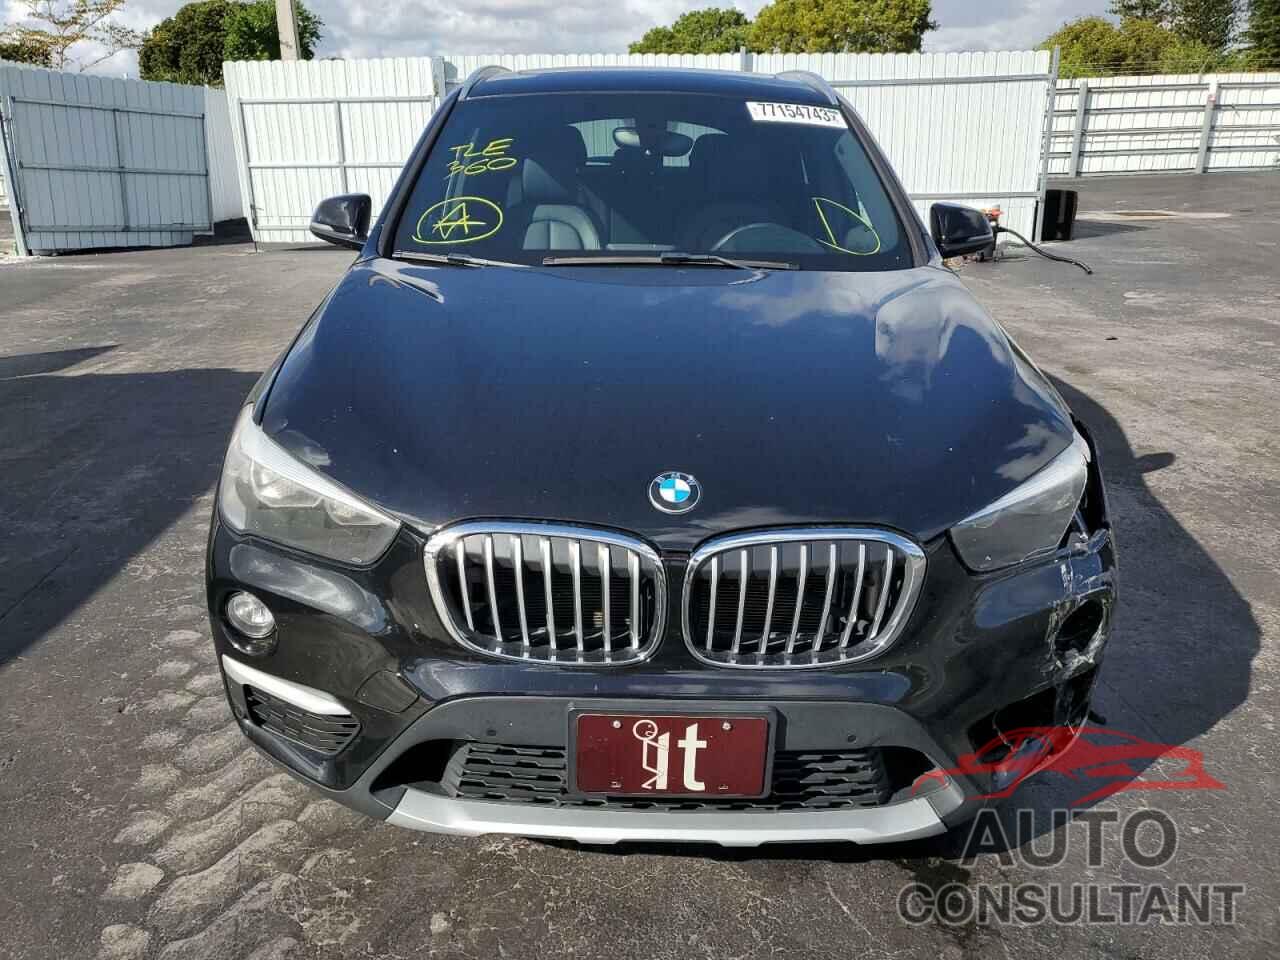 BMW X1 2017 - WBXHU7C32H5H33659